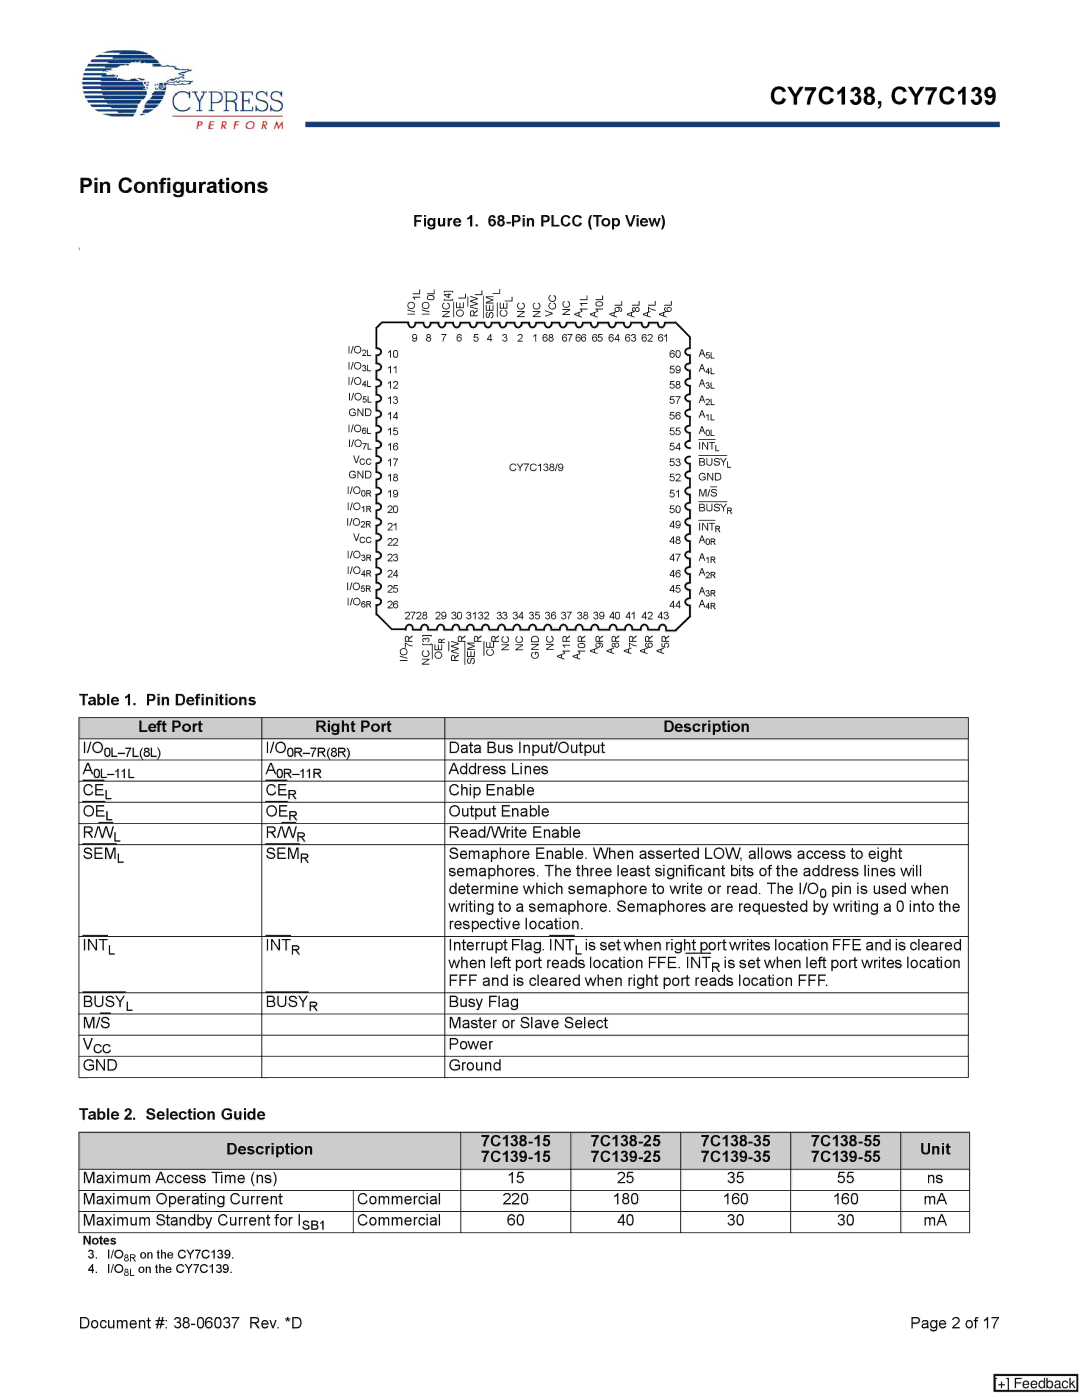 Cypress CY7C138 Pin Configurations, Pin Definitions Left Port Right Port Description, Selection Guide Description, Unit 